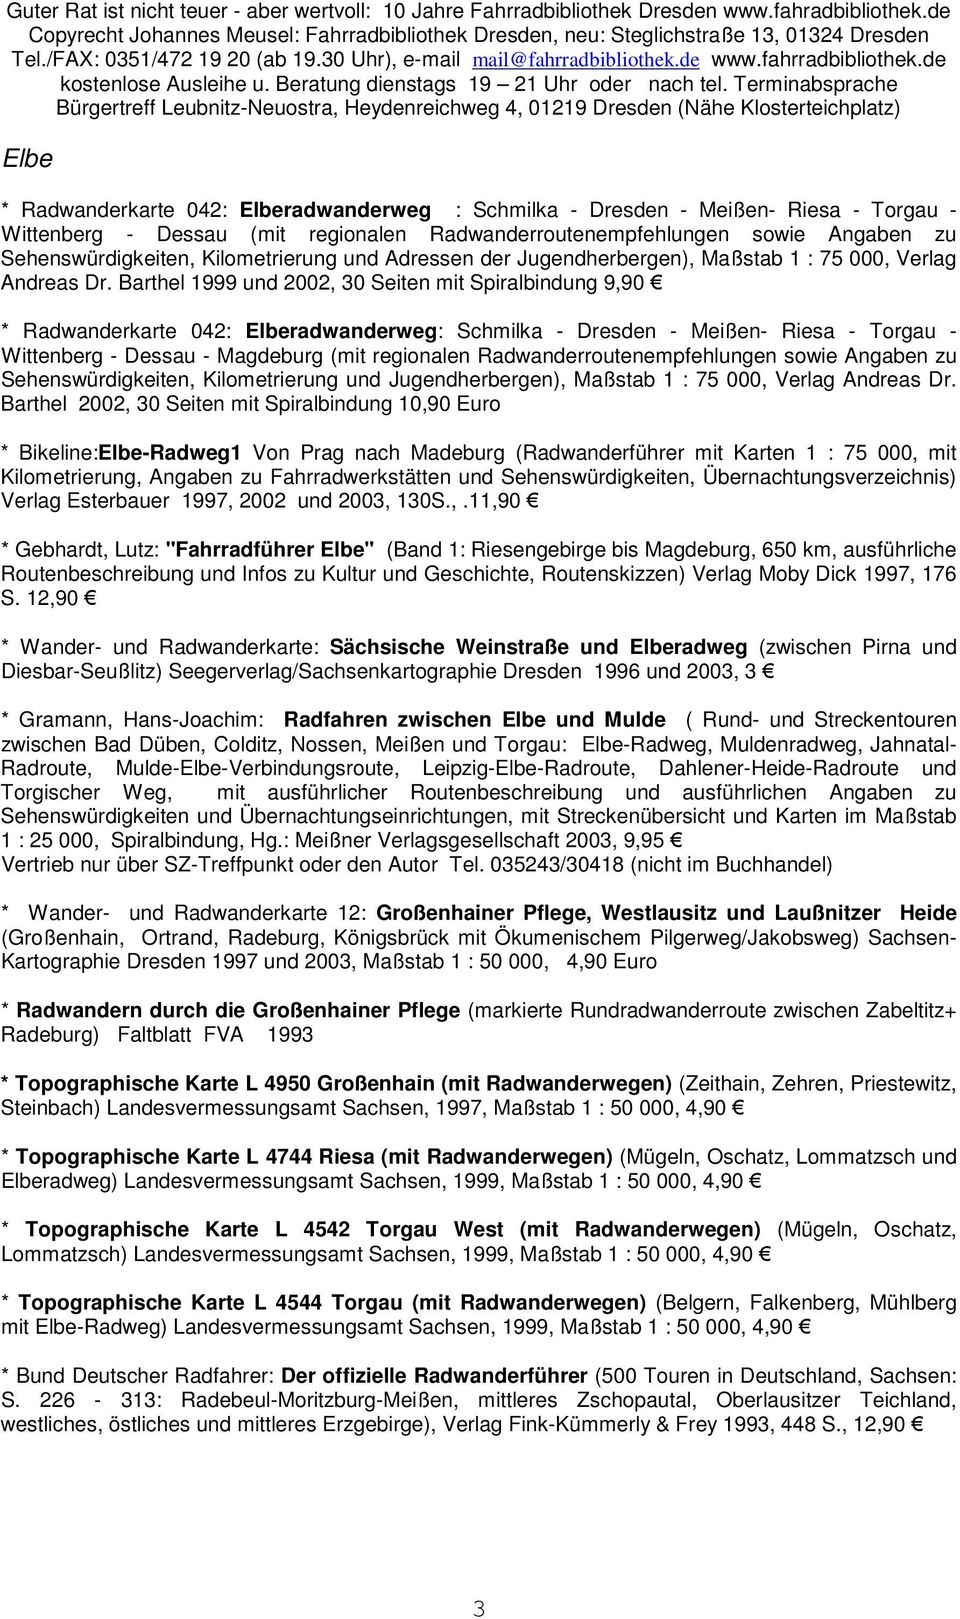 Barthel 1999 und 2002, 30 Seiten mit Spiralbindung 9,90 * Radwanderkarte 042: Elberadwanderweg: Schmilka - Dresden - Meißen- Riesa - Torgau - Wittenberg - Dessau - Magdeburg (mit regionalen